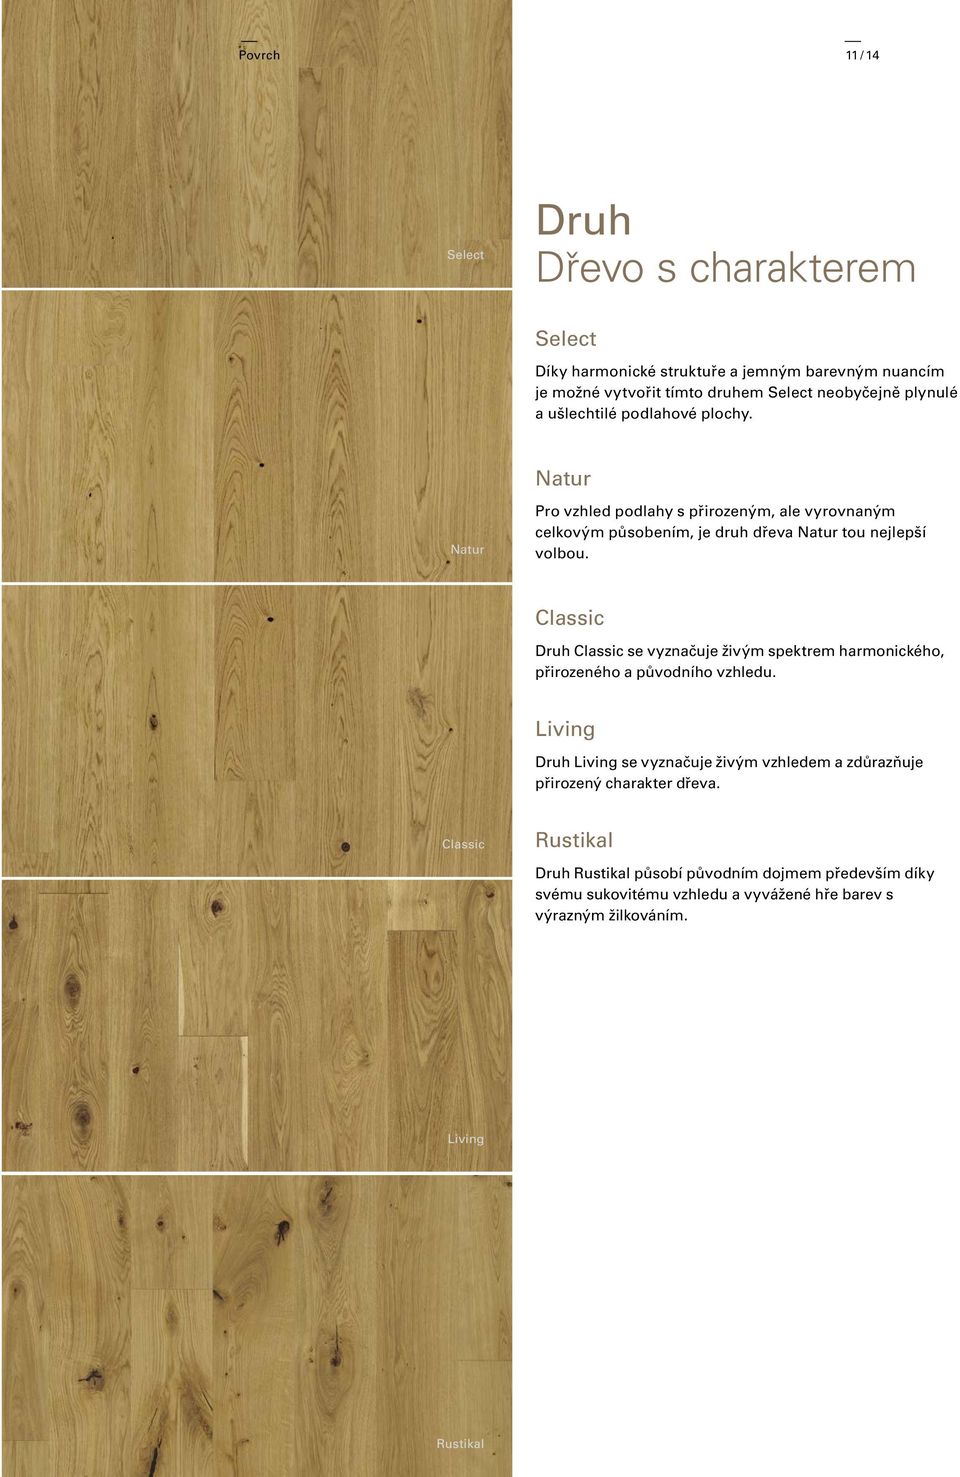 Pro vzhled podlahy s přirozeným, ale vyrovnaným celkovým působením, je druh dřeva tou nejlepší volbou.